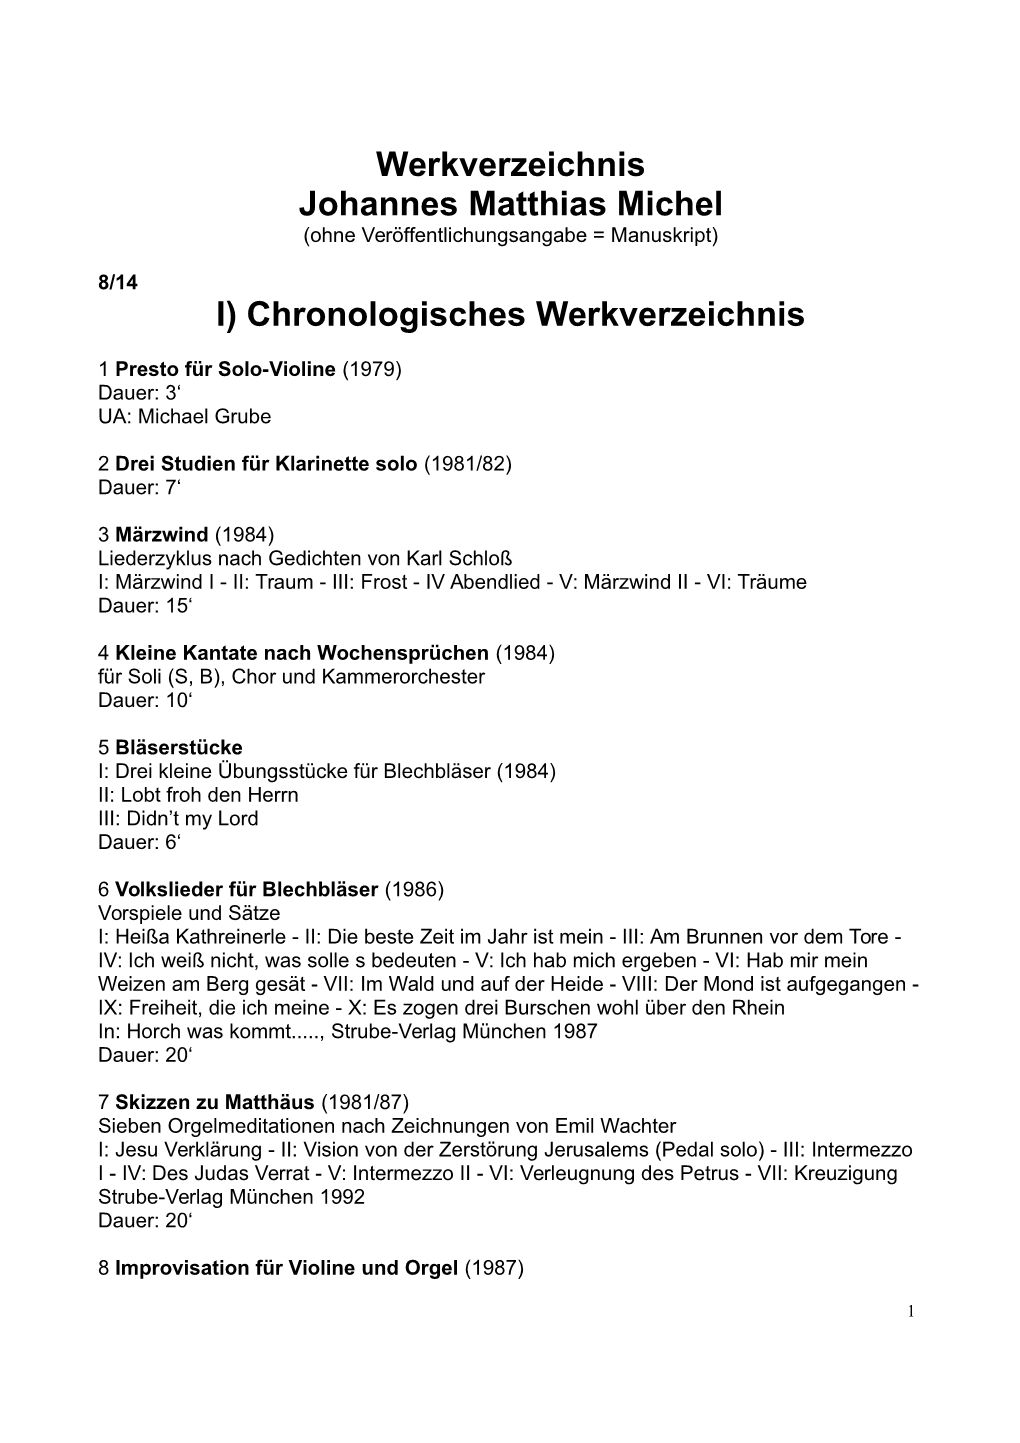 Werkverzeichnis Johannes Matthias Michel I) Chronologisches Werkverzeichnis